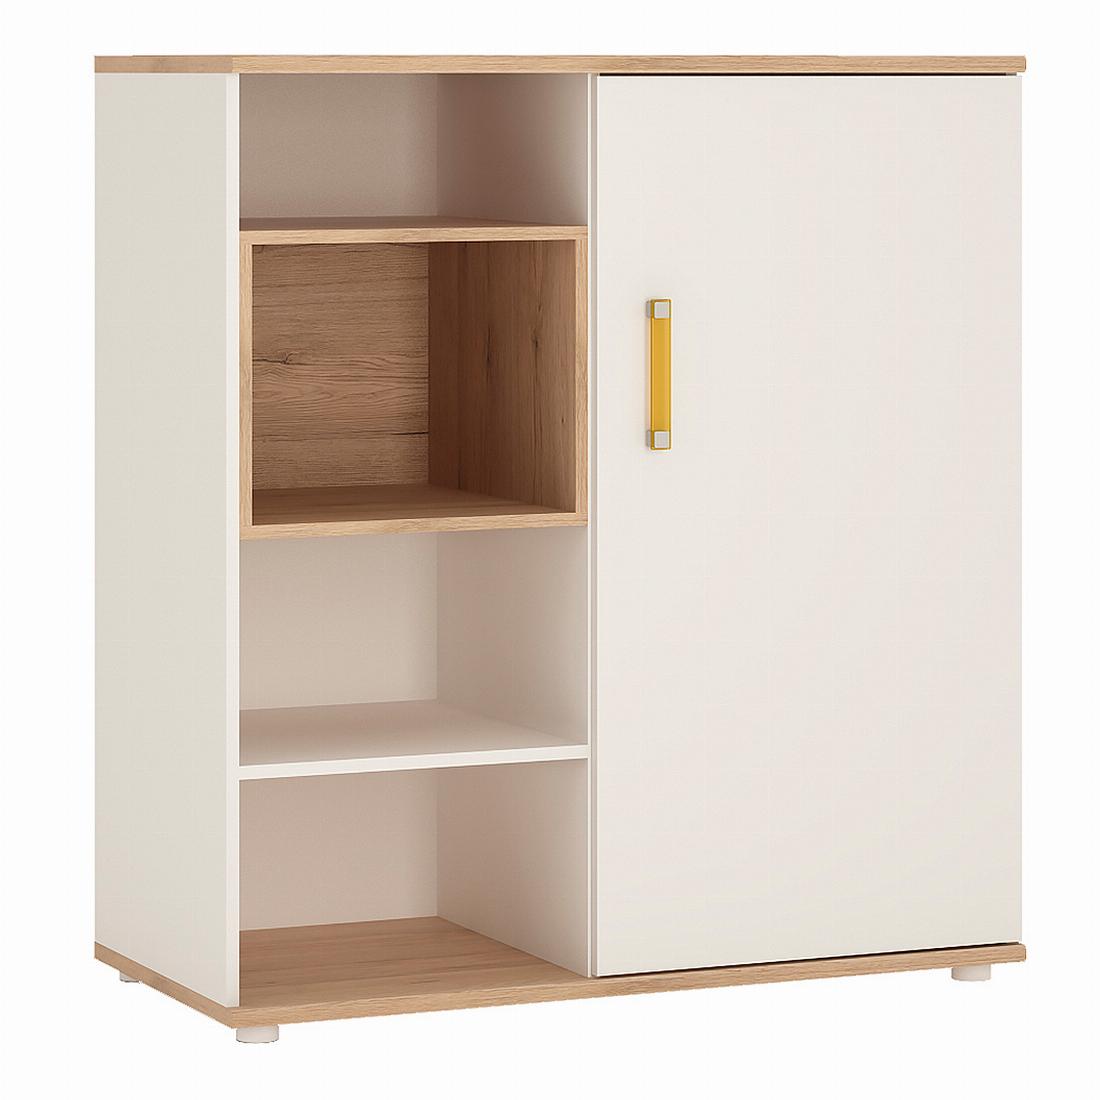 4Kids Low Cabinet with shelves (Sliding Door)